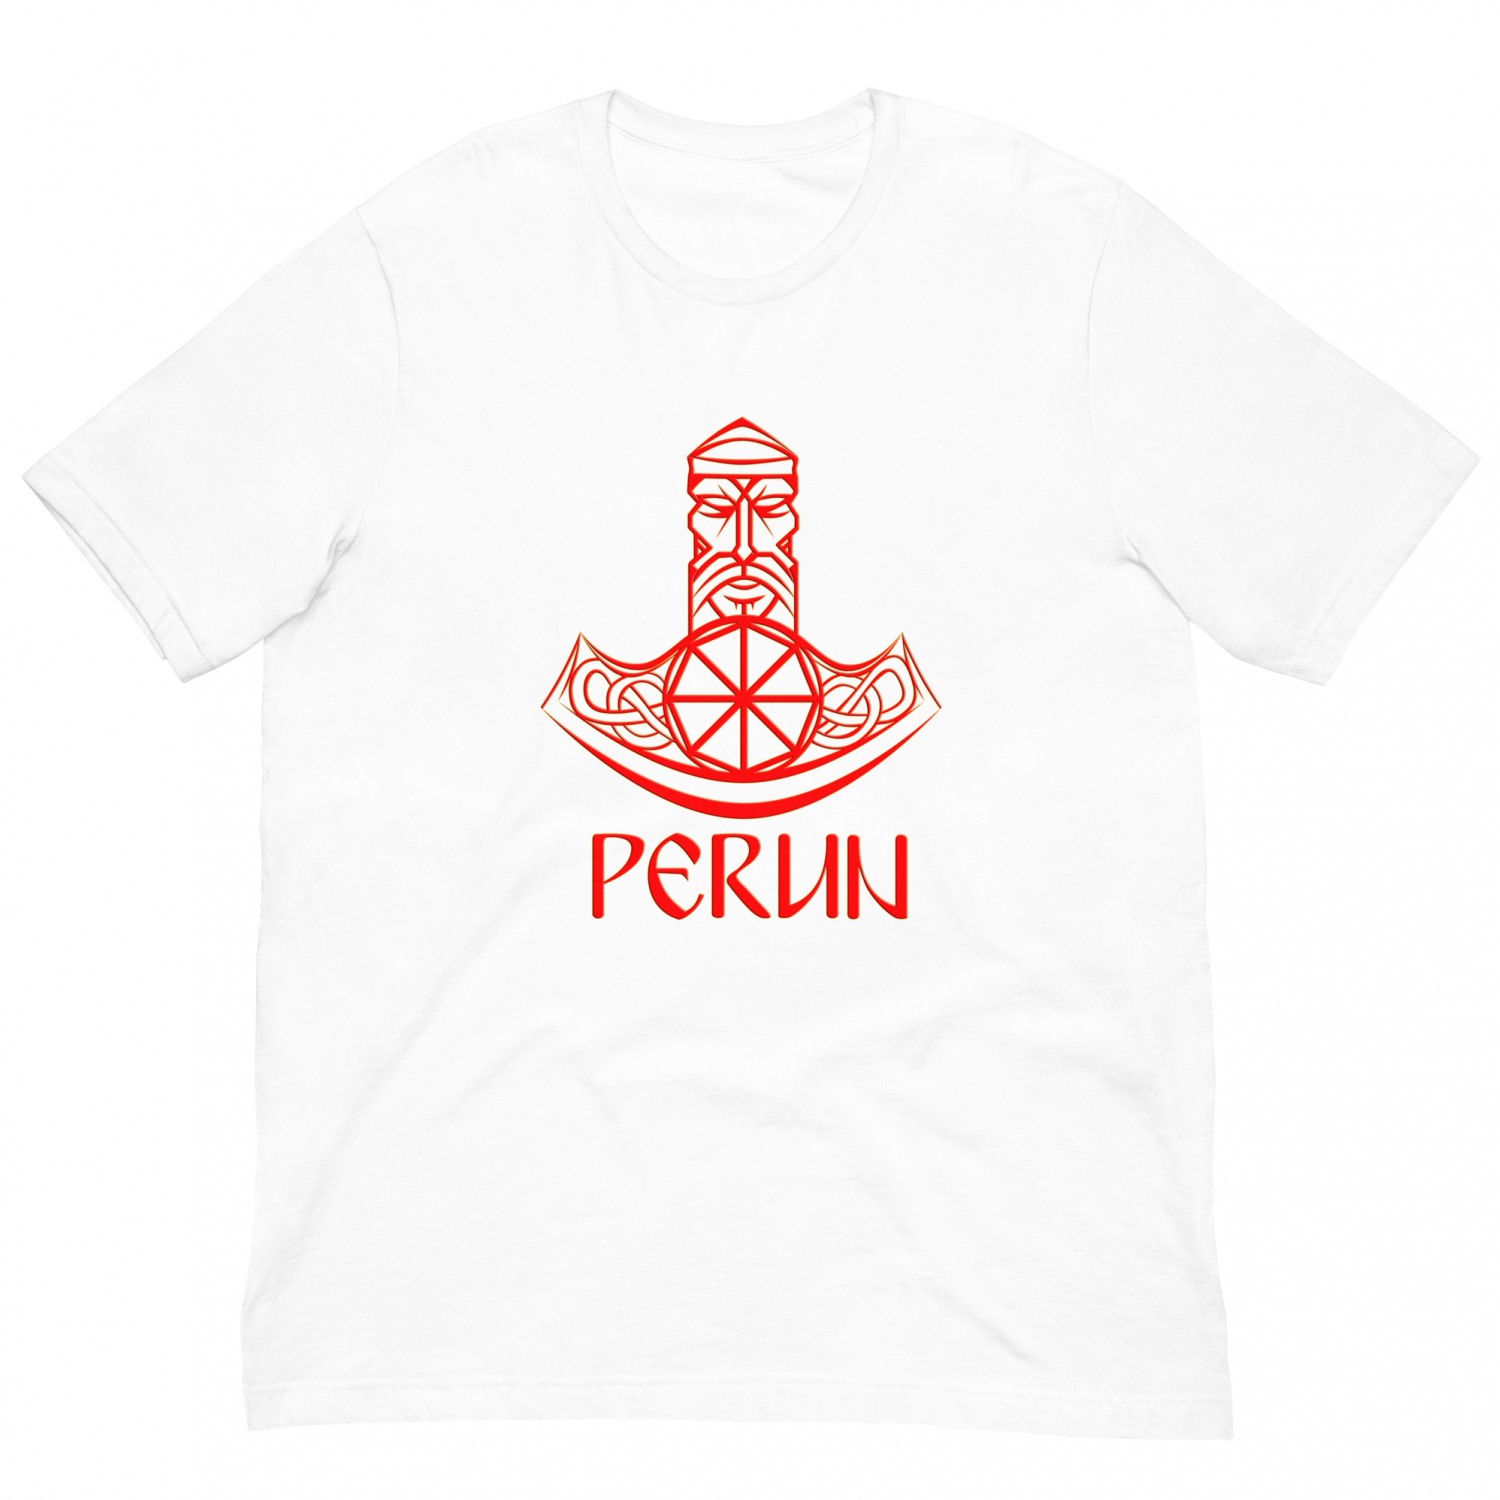 Kup koszulkę "Axe Perun"